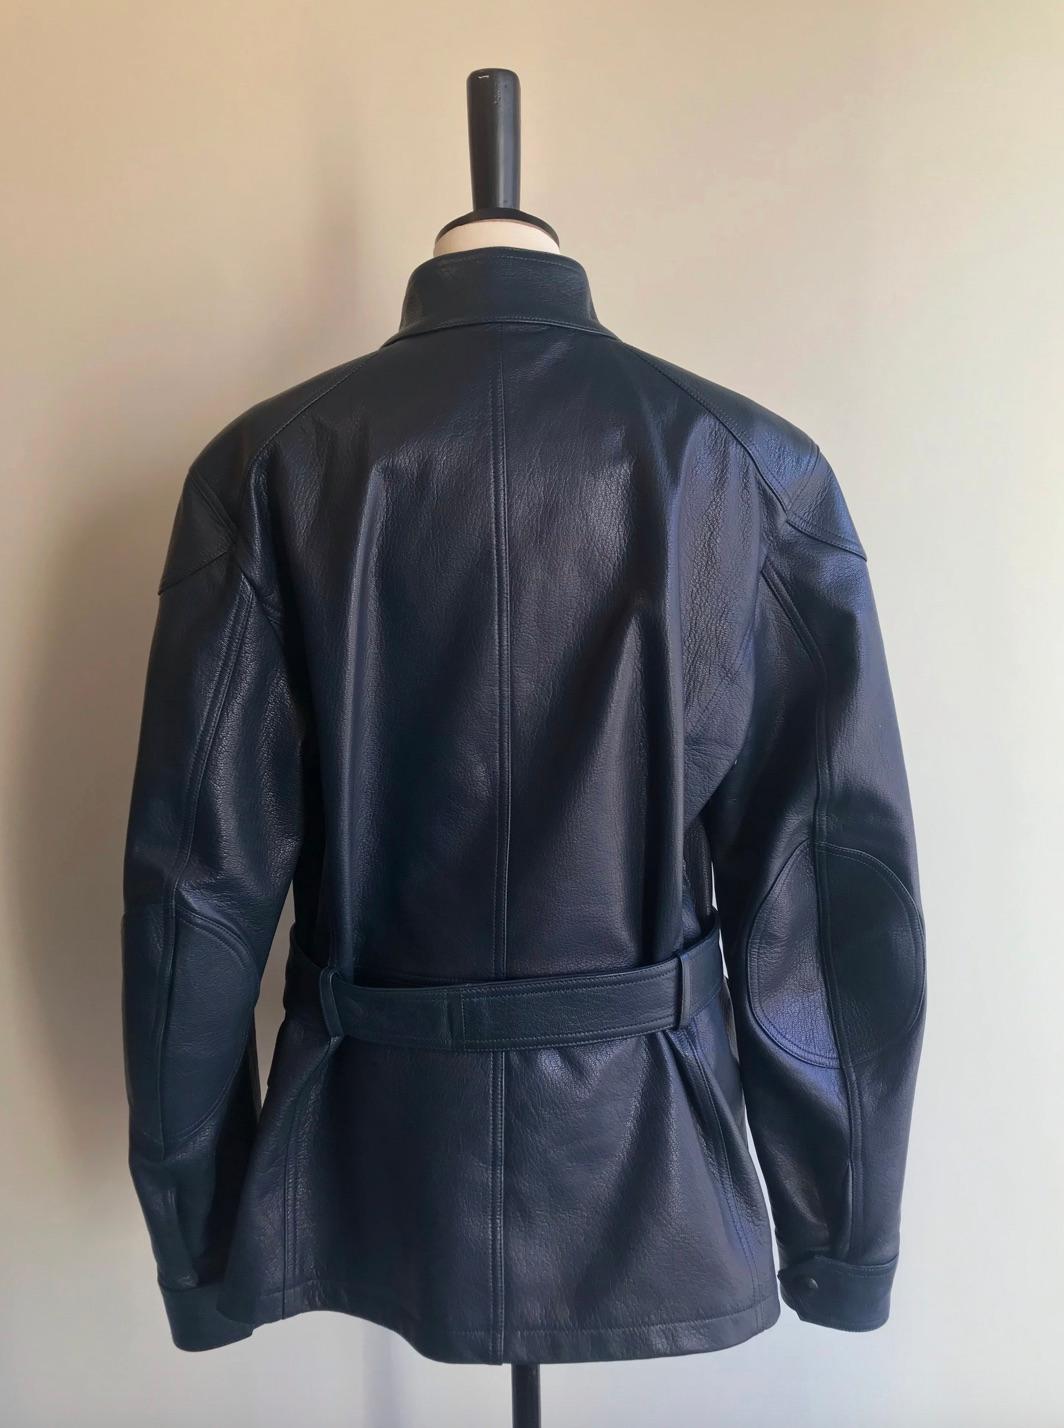 Belstaff Trialmaster Leather Jacket For Sale 10